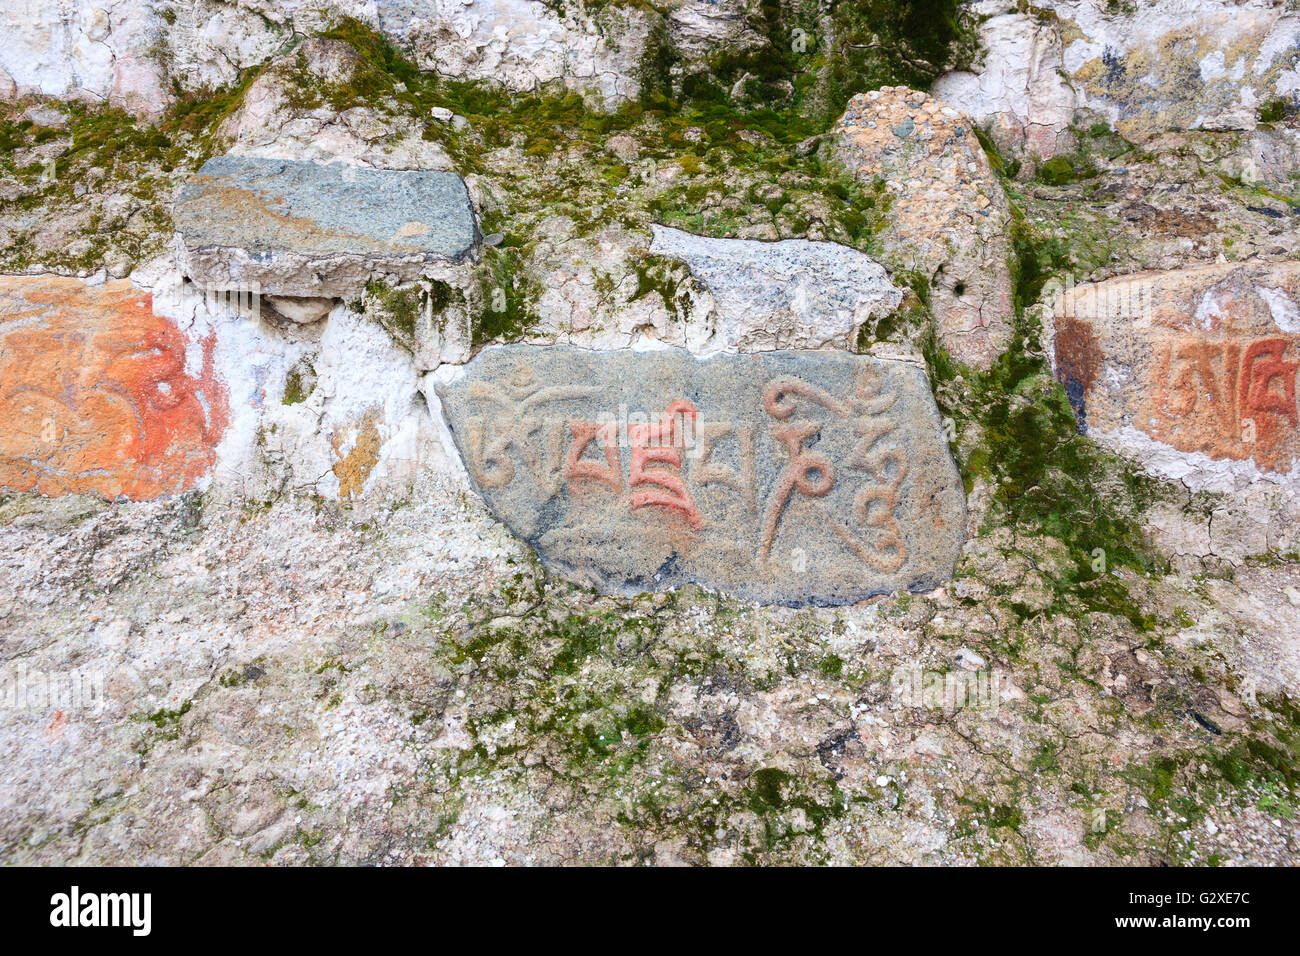 Mani pierre avec l'inscription Sanskrit mantra "om mani padme hum" Banque D'Images